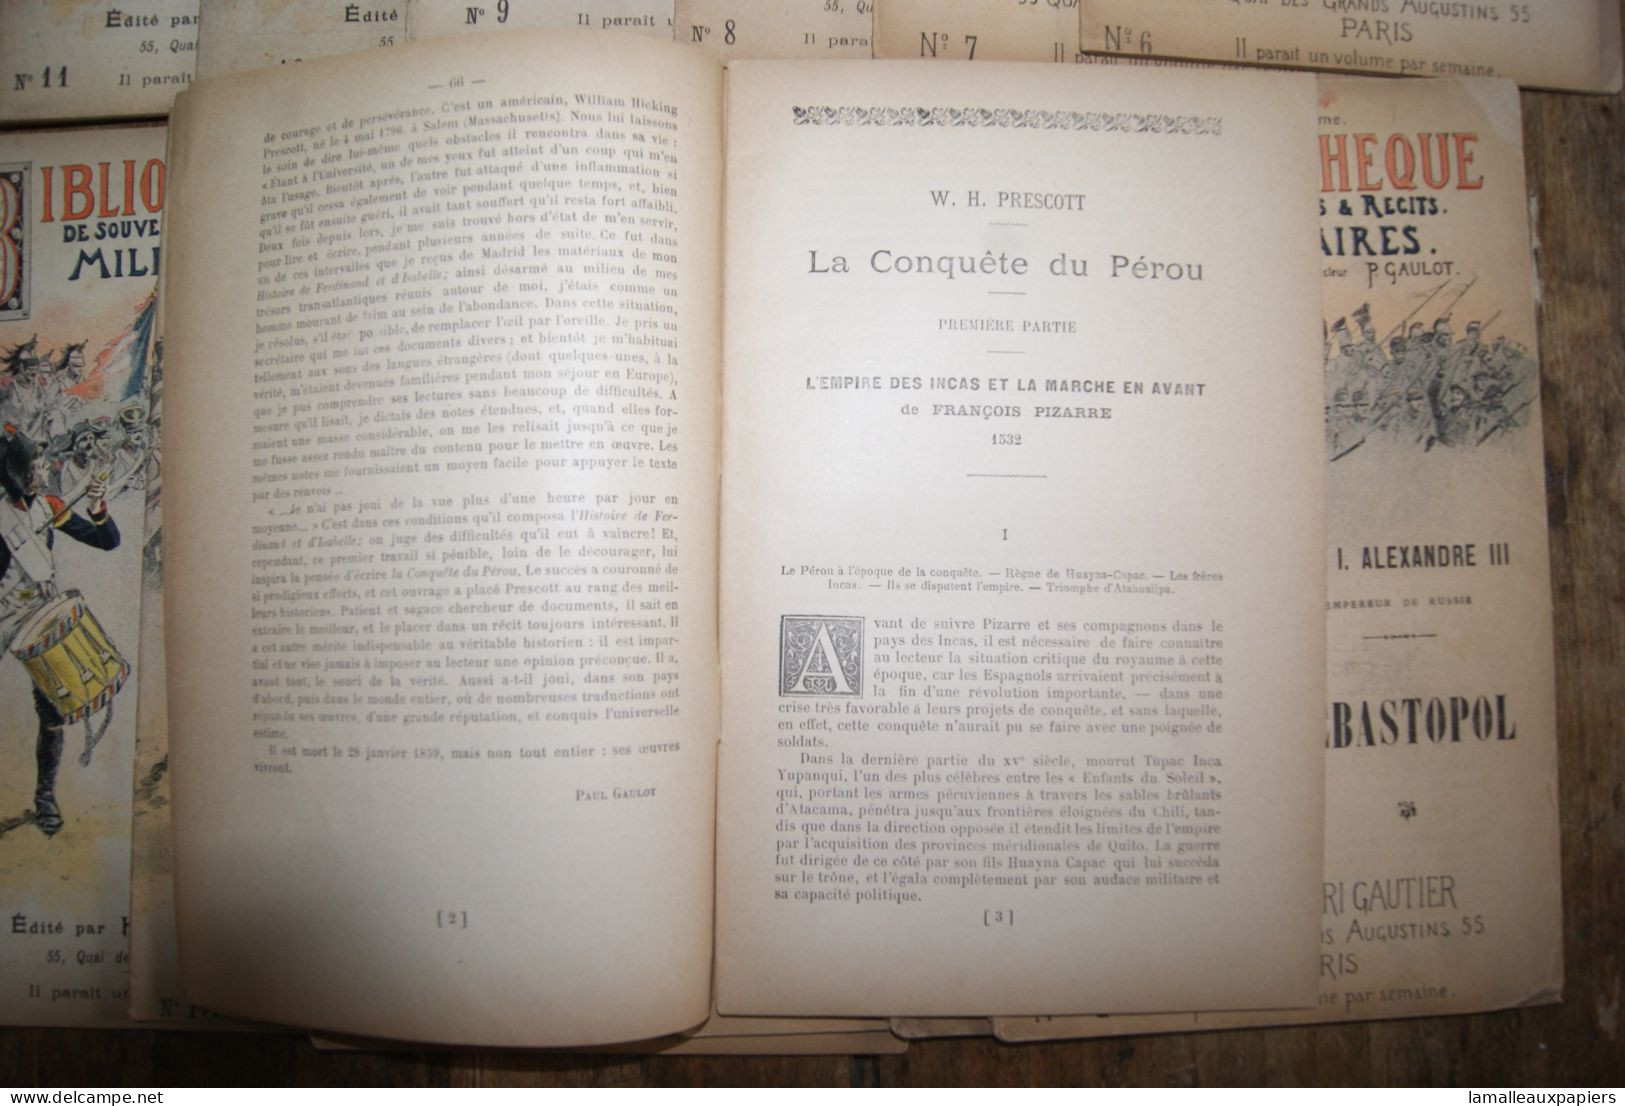 Lot de 14 numéros de la bibliothèque des souvenirs et récits militaires (1896-97)